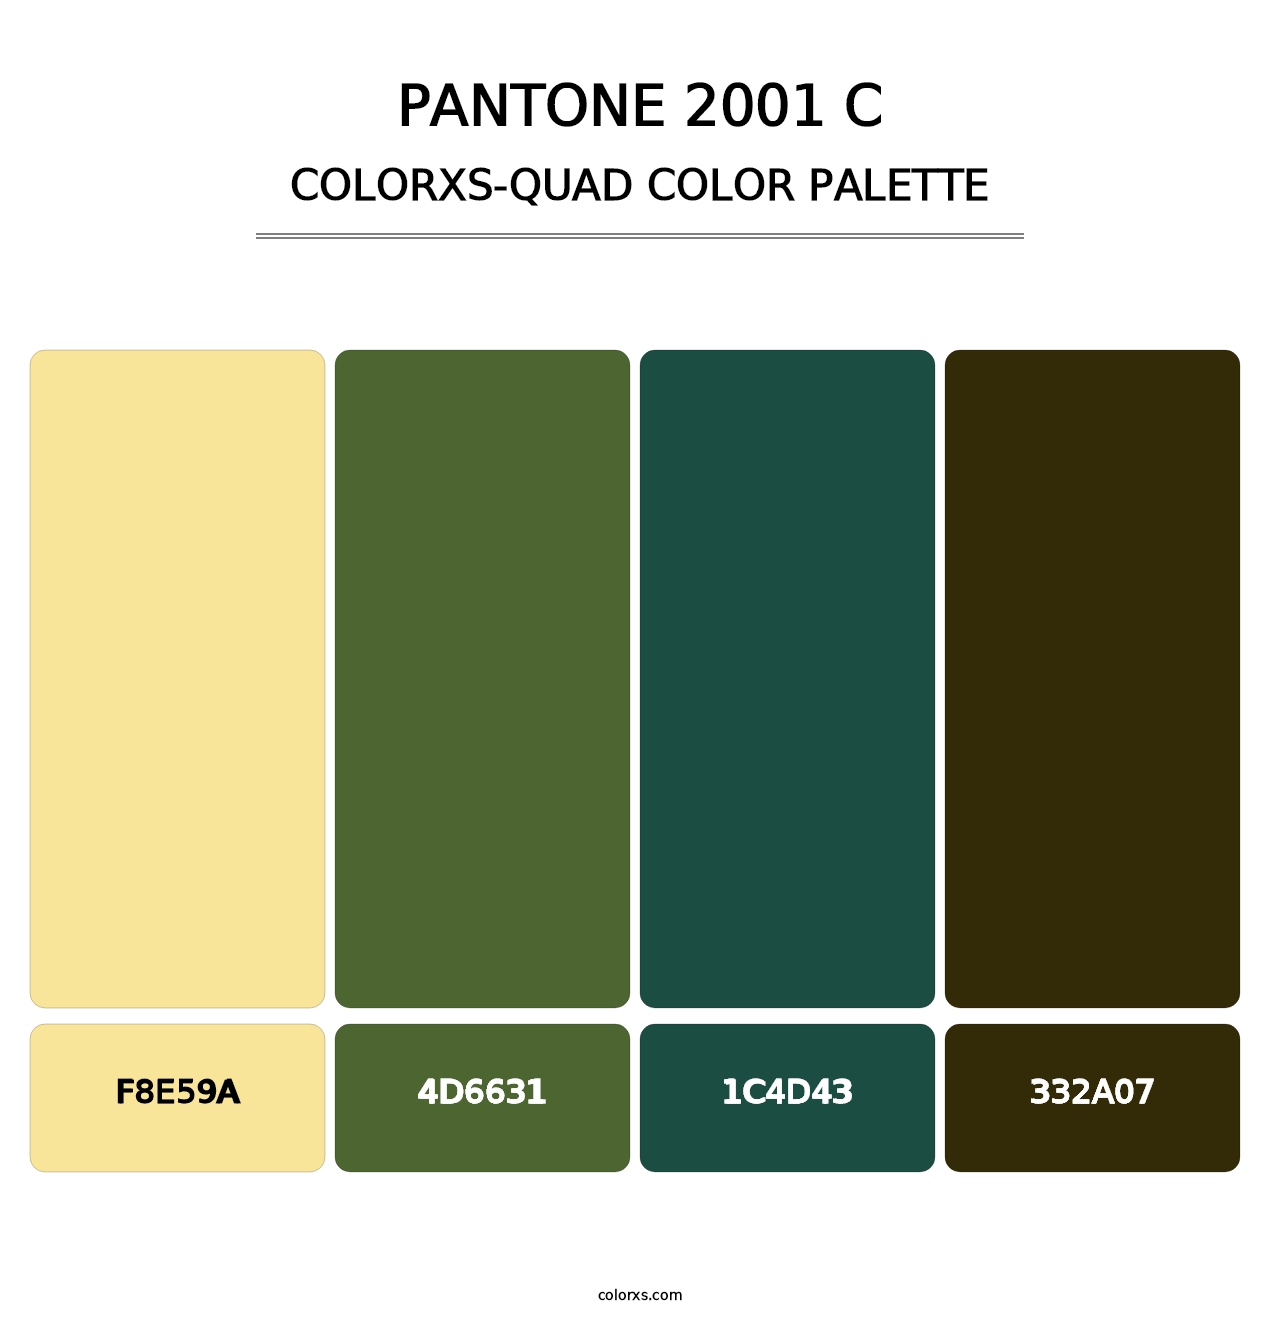 PANTONE 2001 C - Colorxs Quad Palette